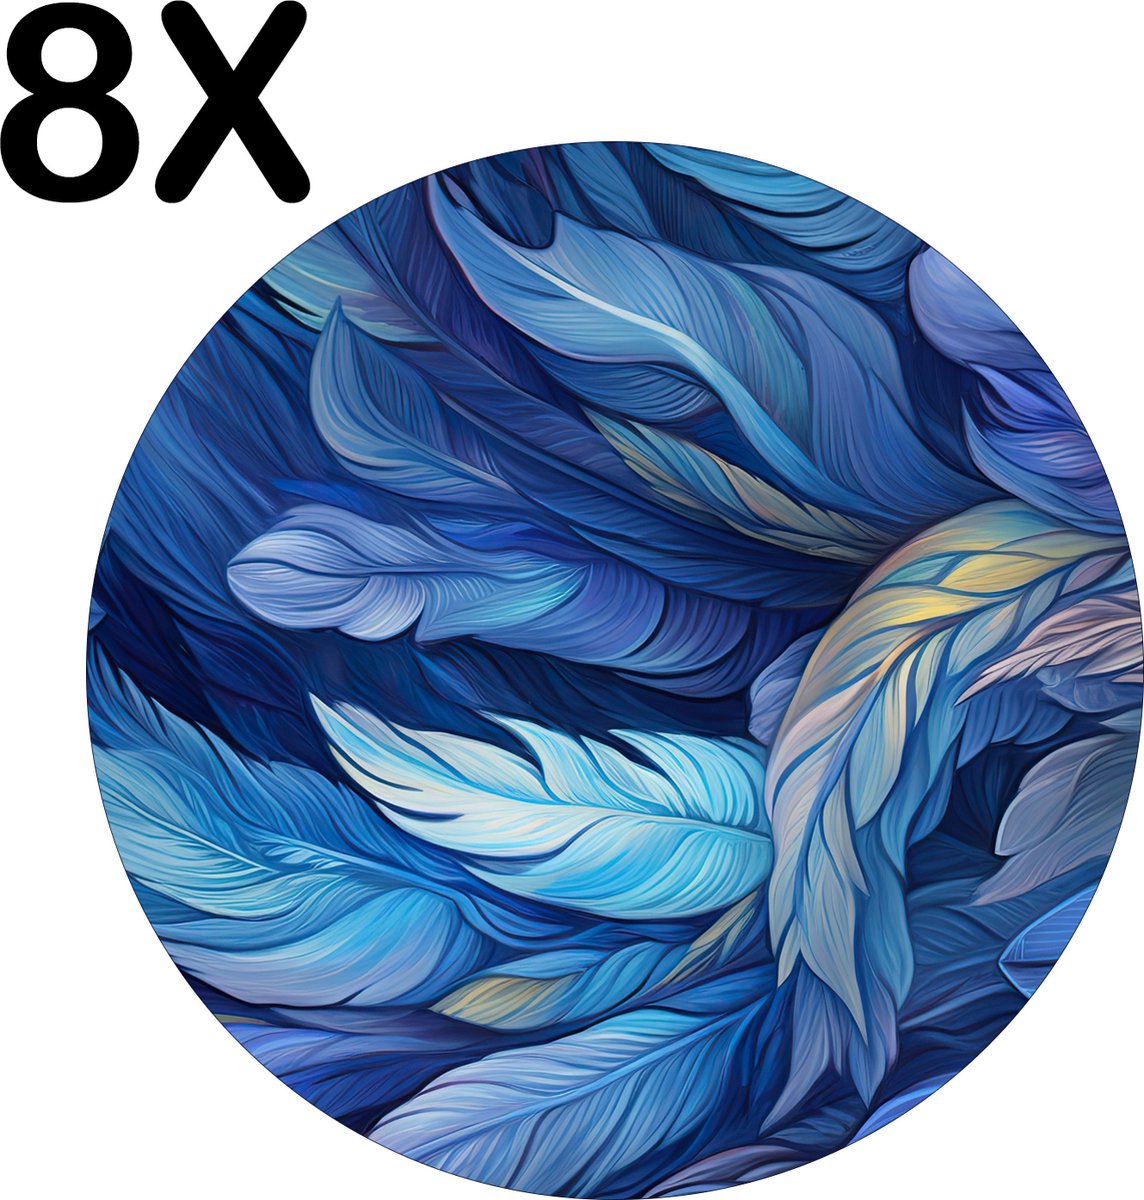 BWK Flexibele Ronde Placemat - Getekende Blauwe Veren - Set van 8 Placemats - 40x40 cm - PVC Doek - Afneembaar